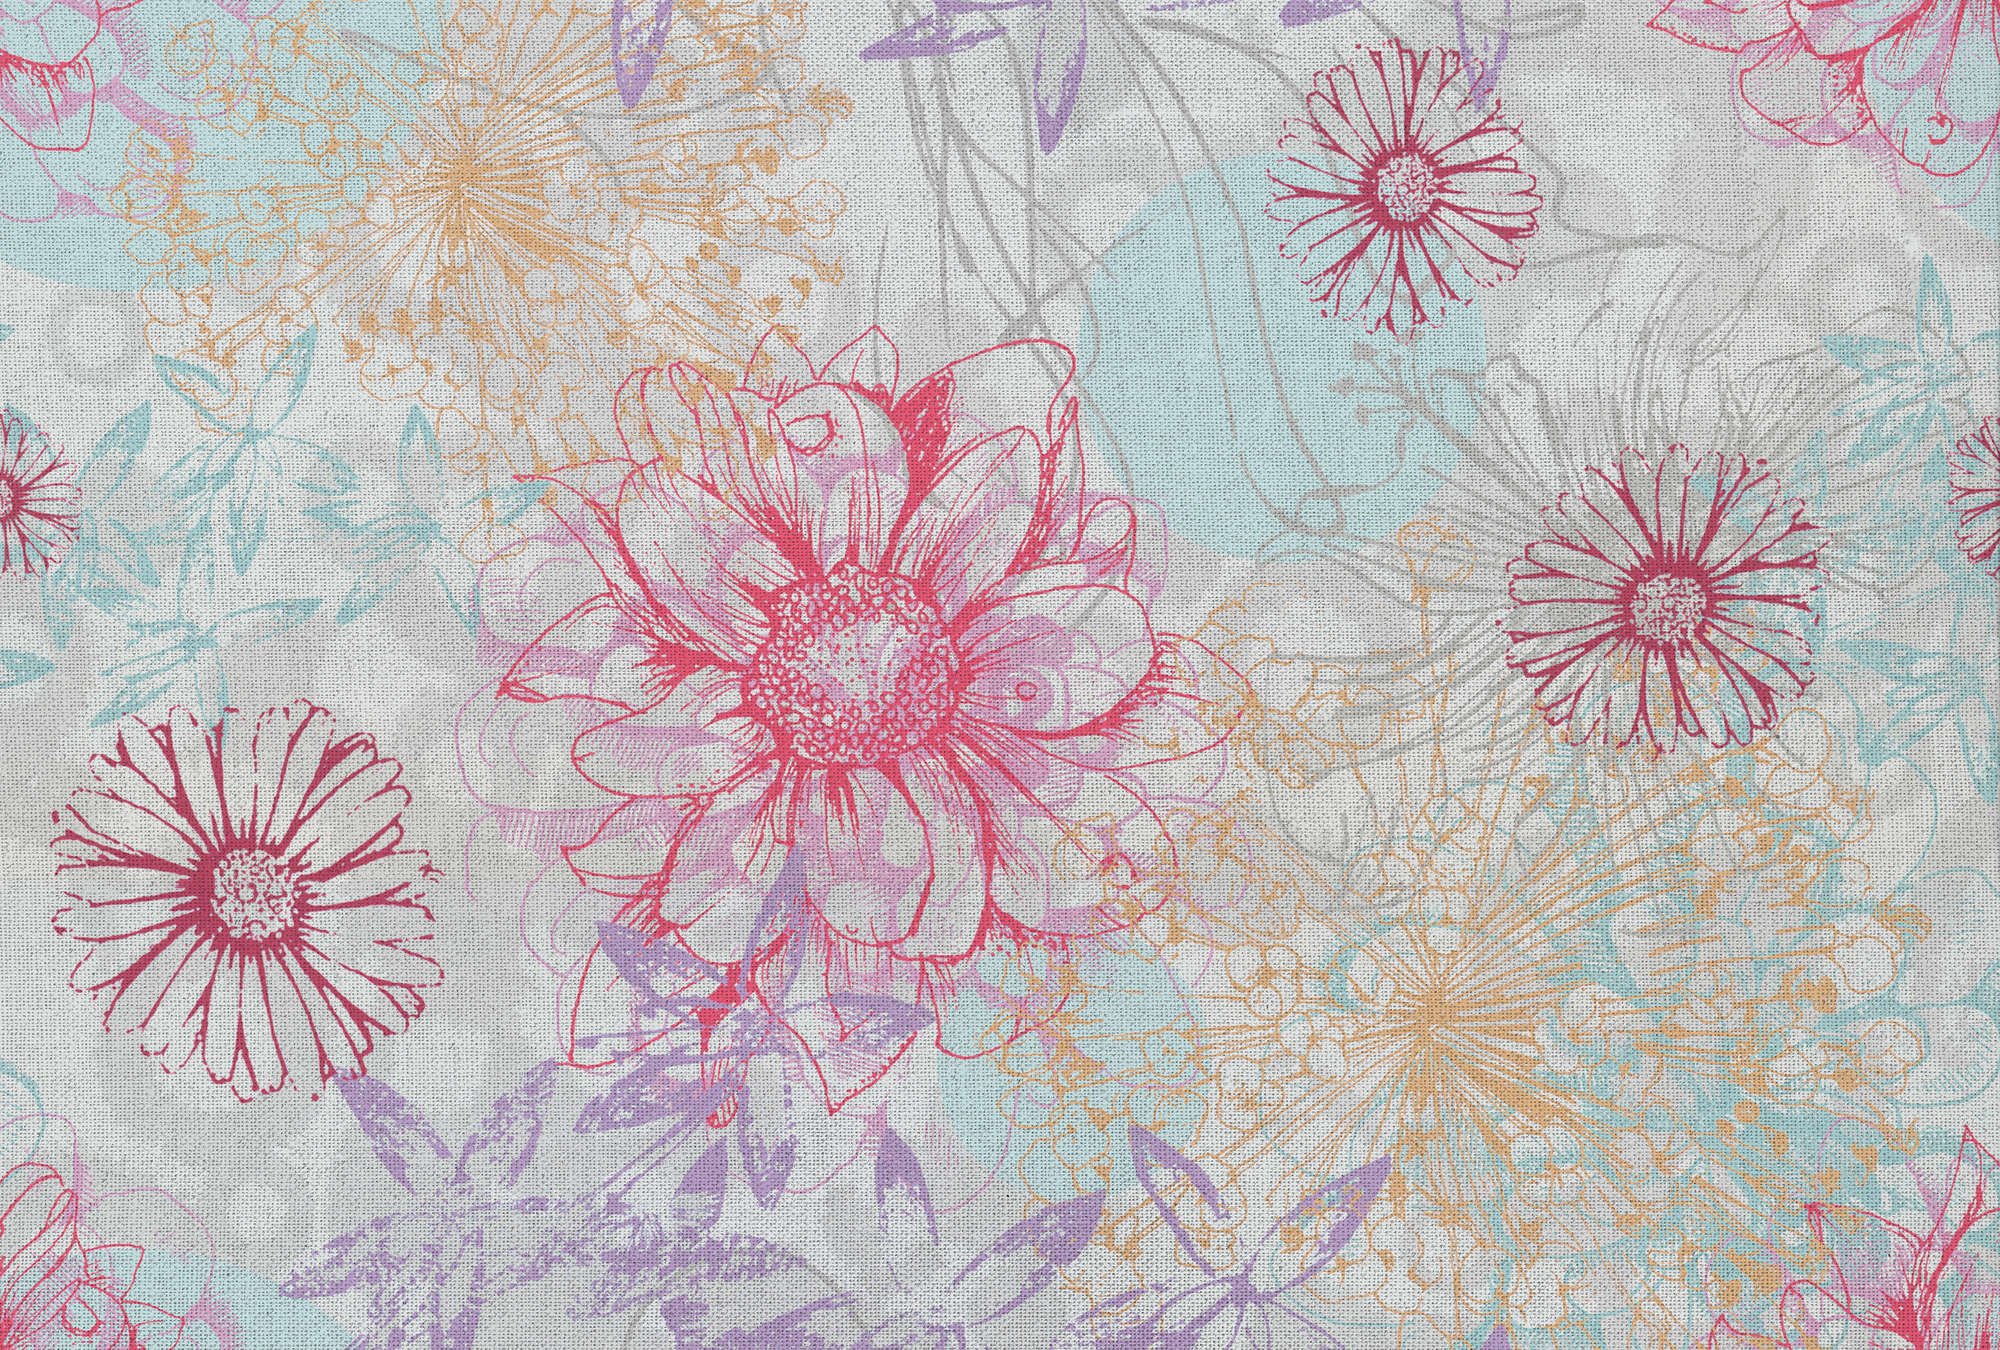             Papel pintado fotográfico de colores con aspecto textil y flores - rosa, azul, blanco
        